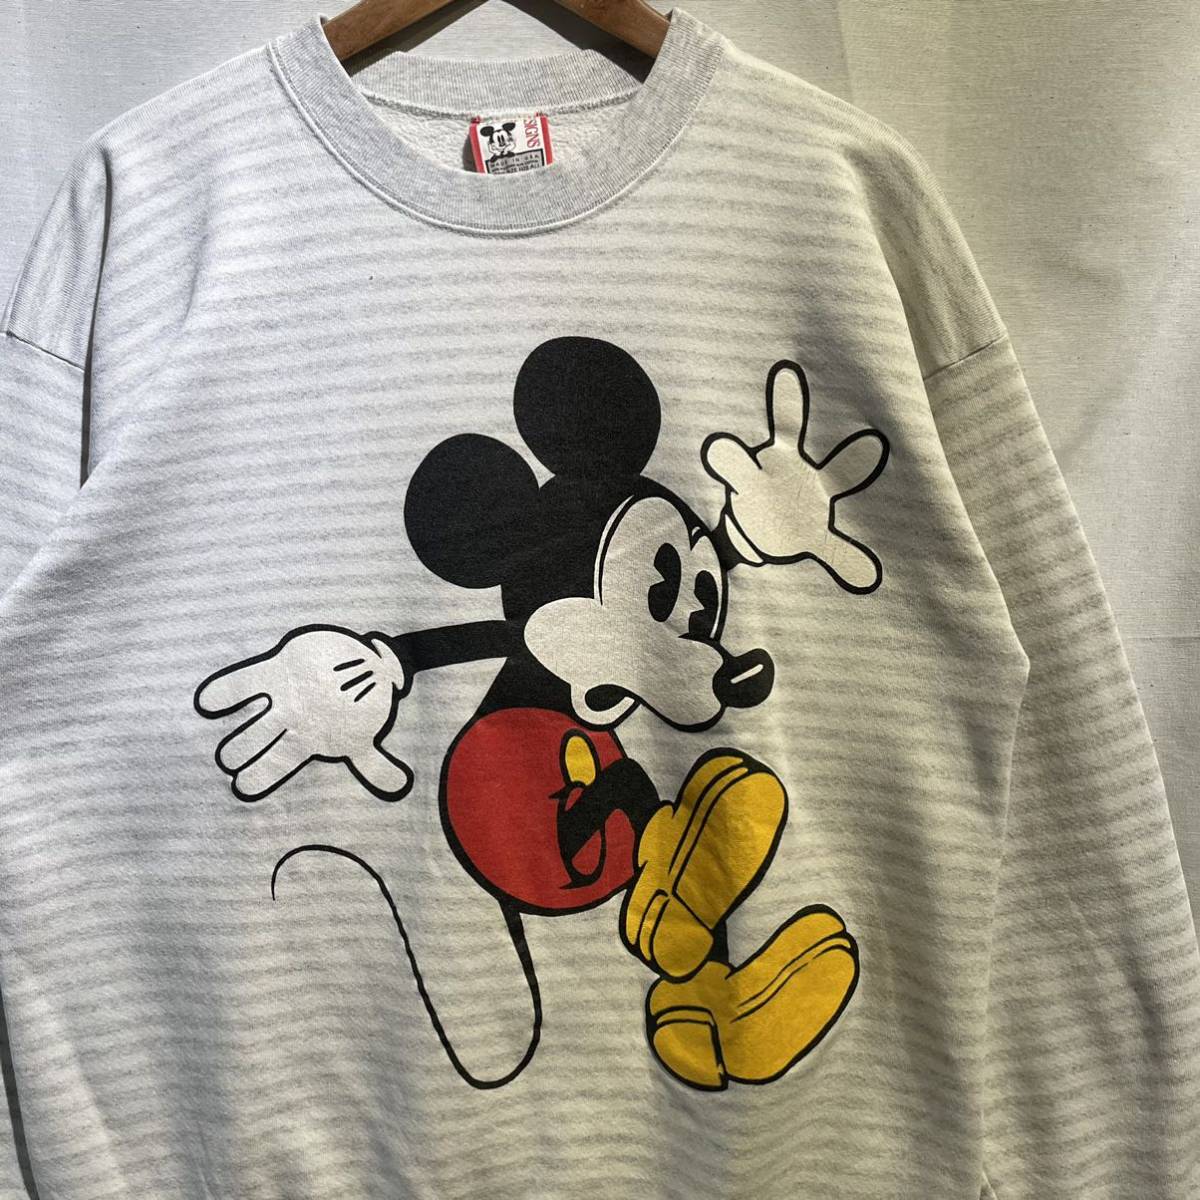 【レア】90s Mickey スウェット USA製 ヴィンテージ Disney DESIGNS ミッキー ディズニー / 古着 アニメ アート  tシャツ champion 80s 70s